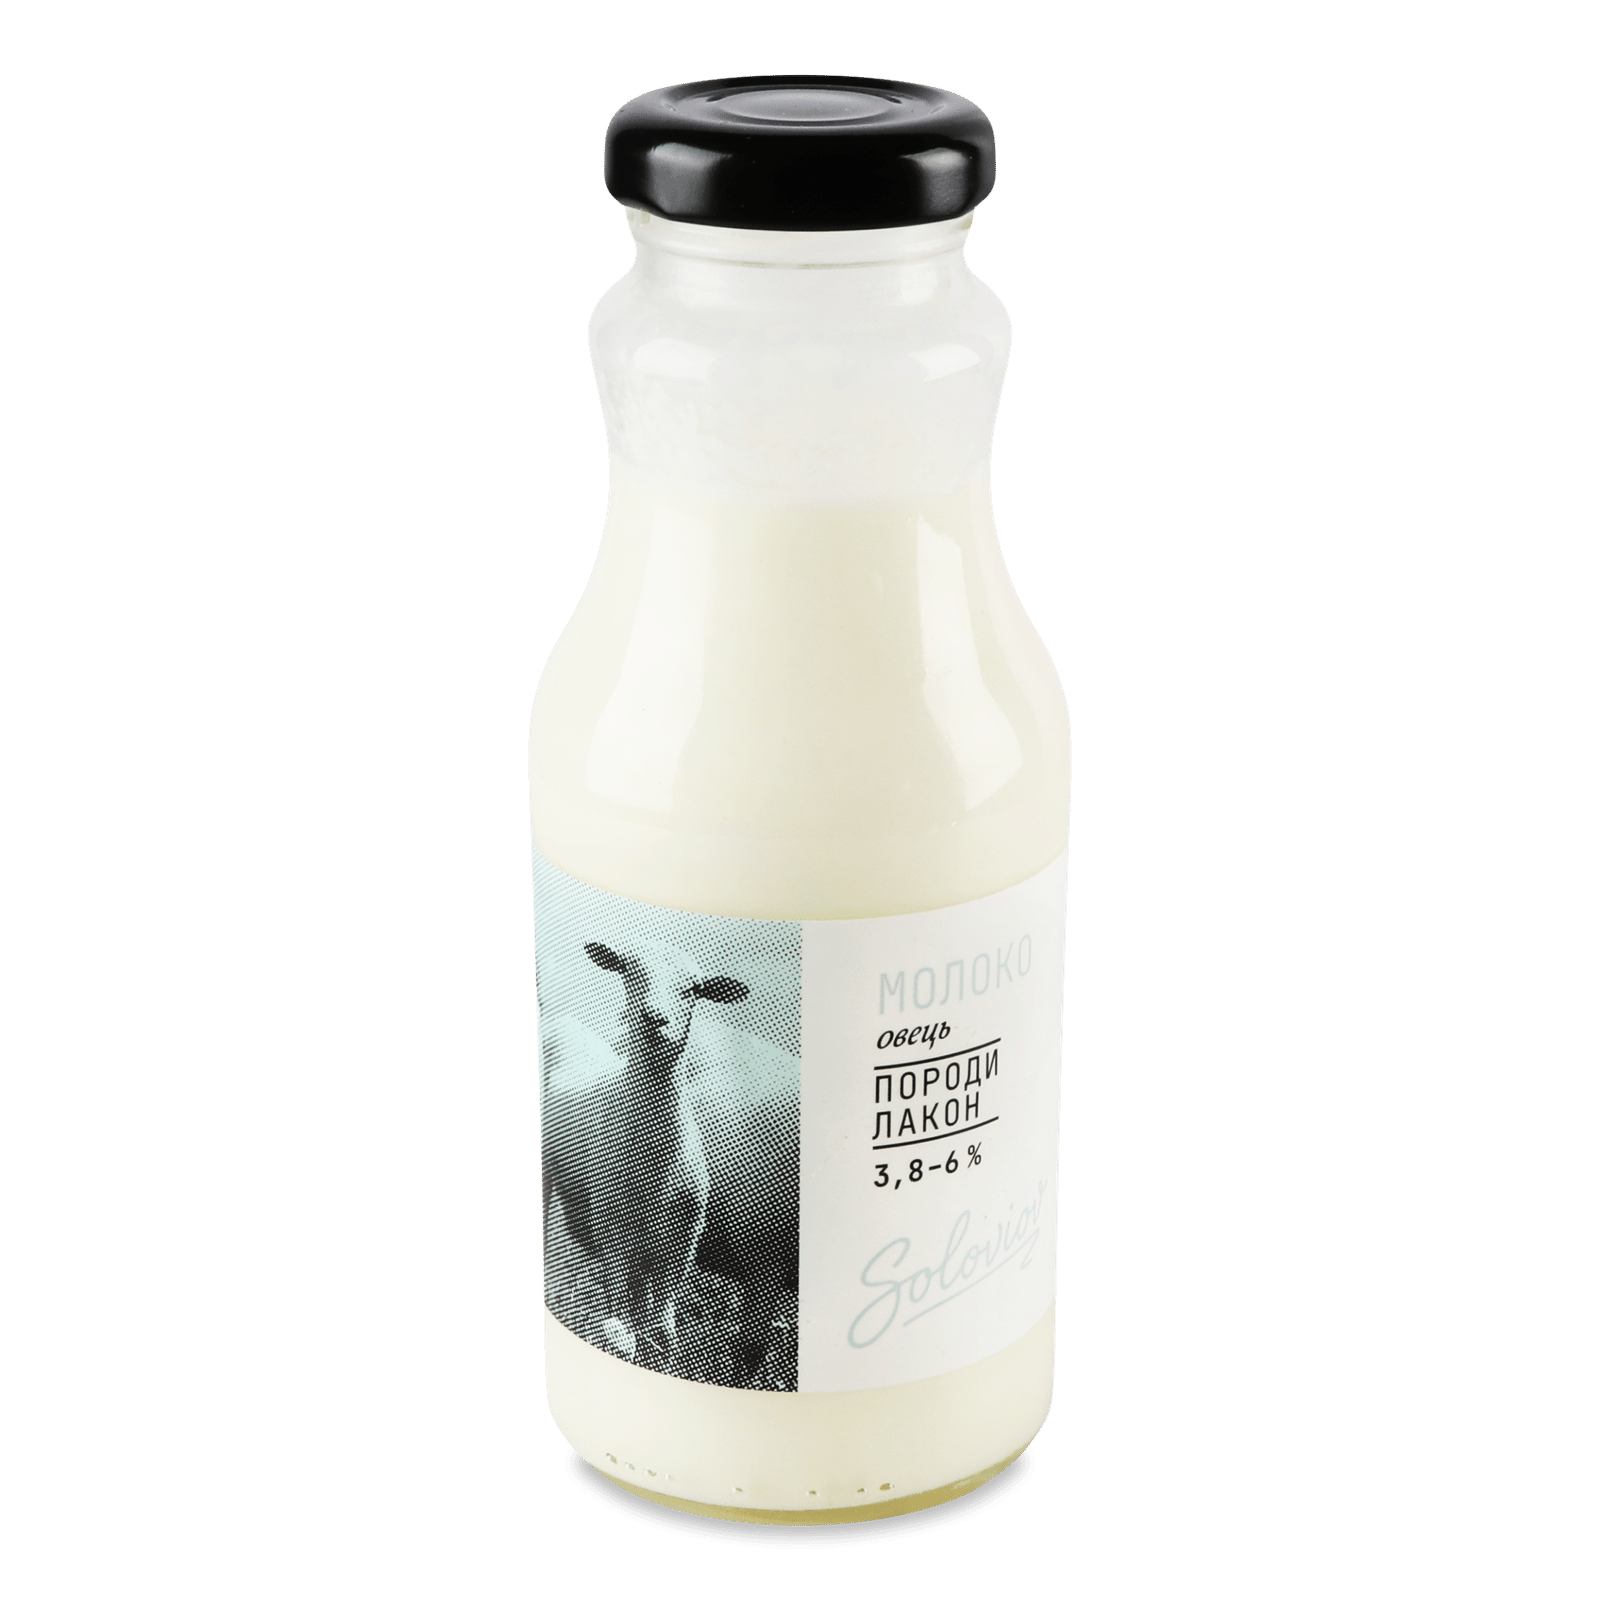 Молоко «Лавка традицій» Soloviov овець породи Лакон 3,8-6% - 1